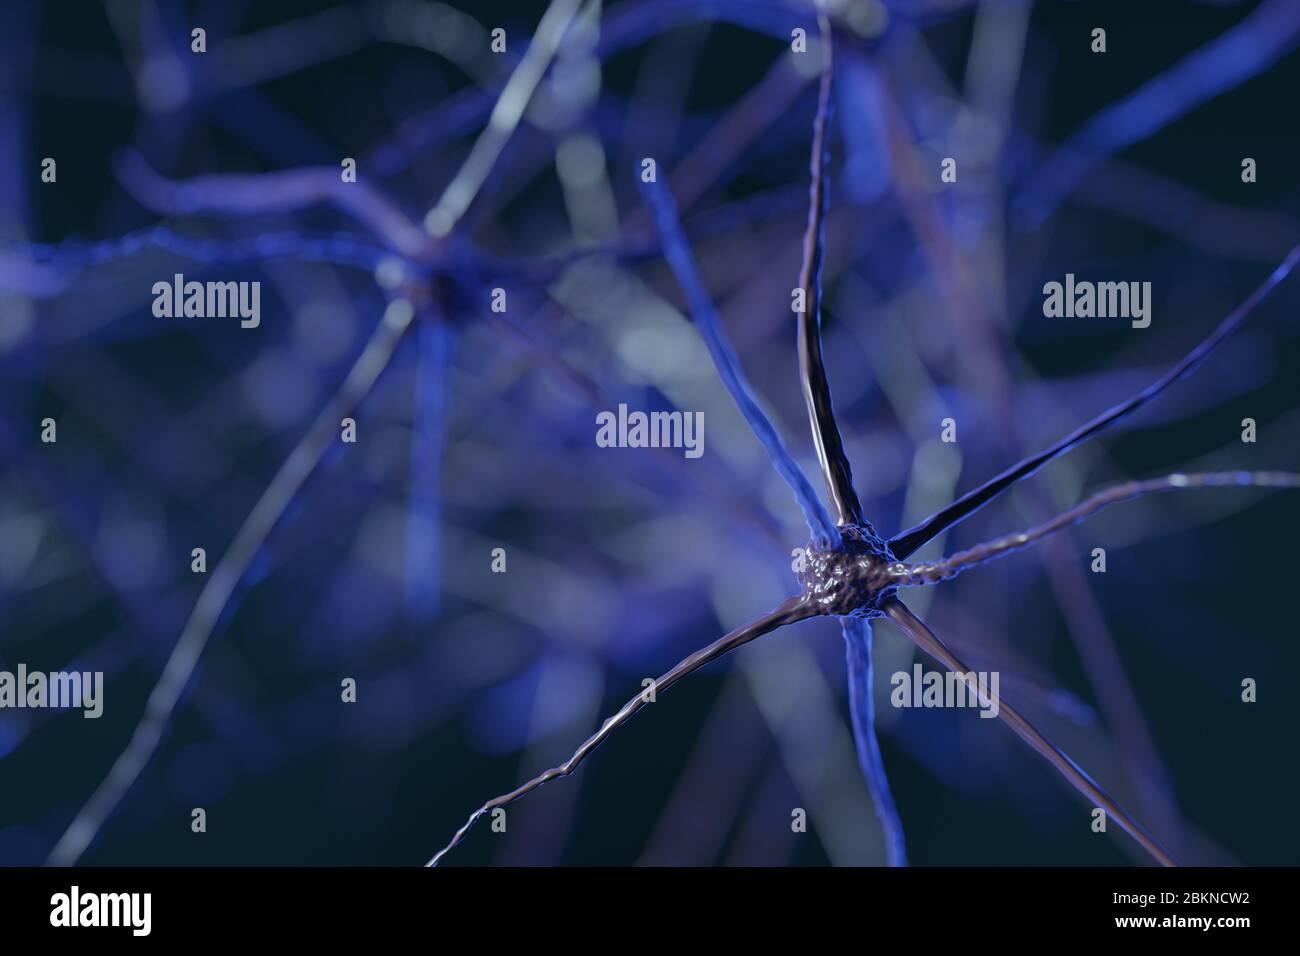 Cellules abstraites de neurones cérébraux avec nœuds de liaison. Les cellules Synapse et neurone envoient des signaux chimiques électriques. Neurones interconnectés avec des composants électriques Banque D'Images